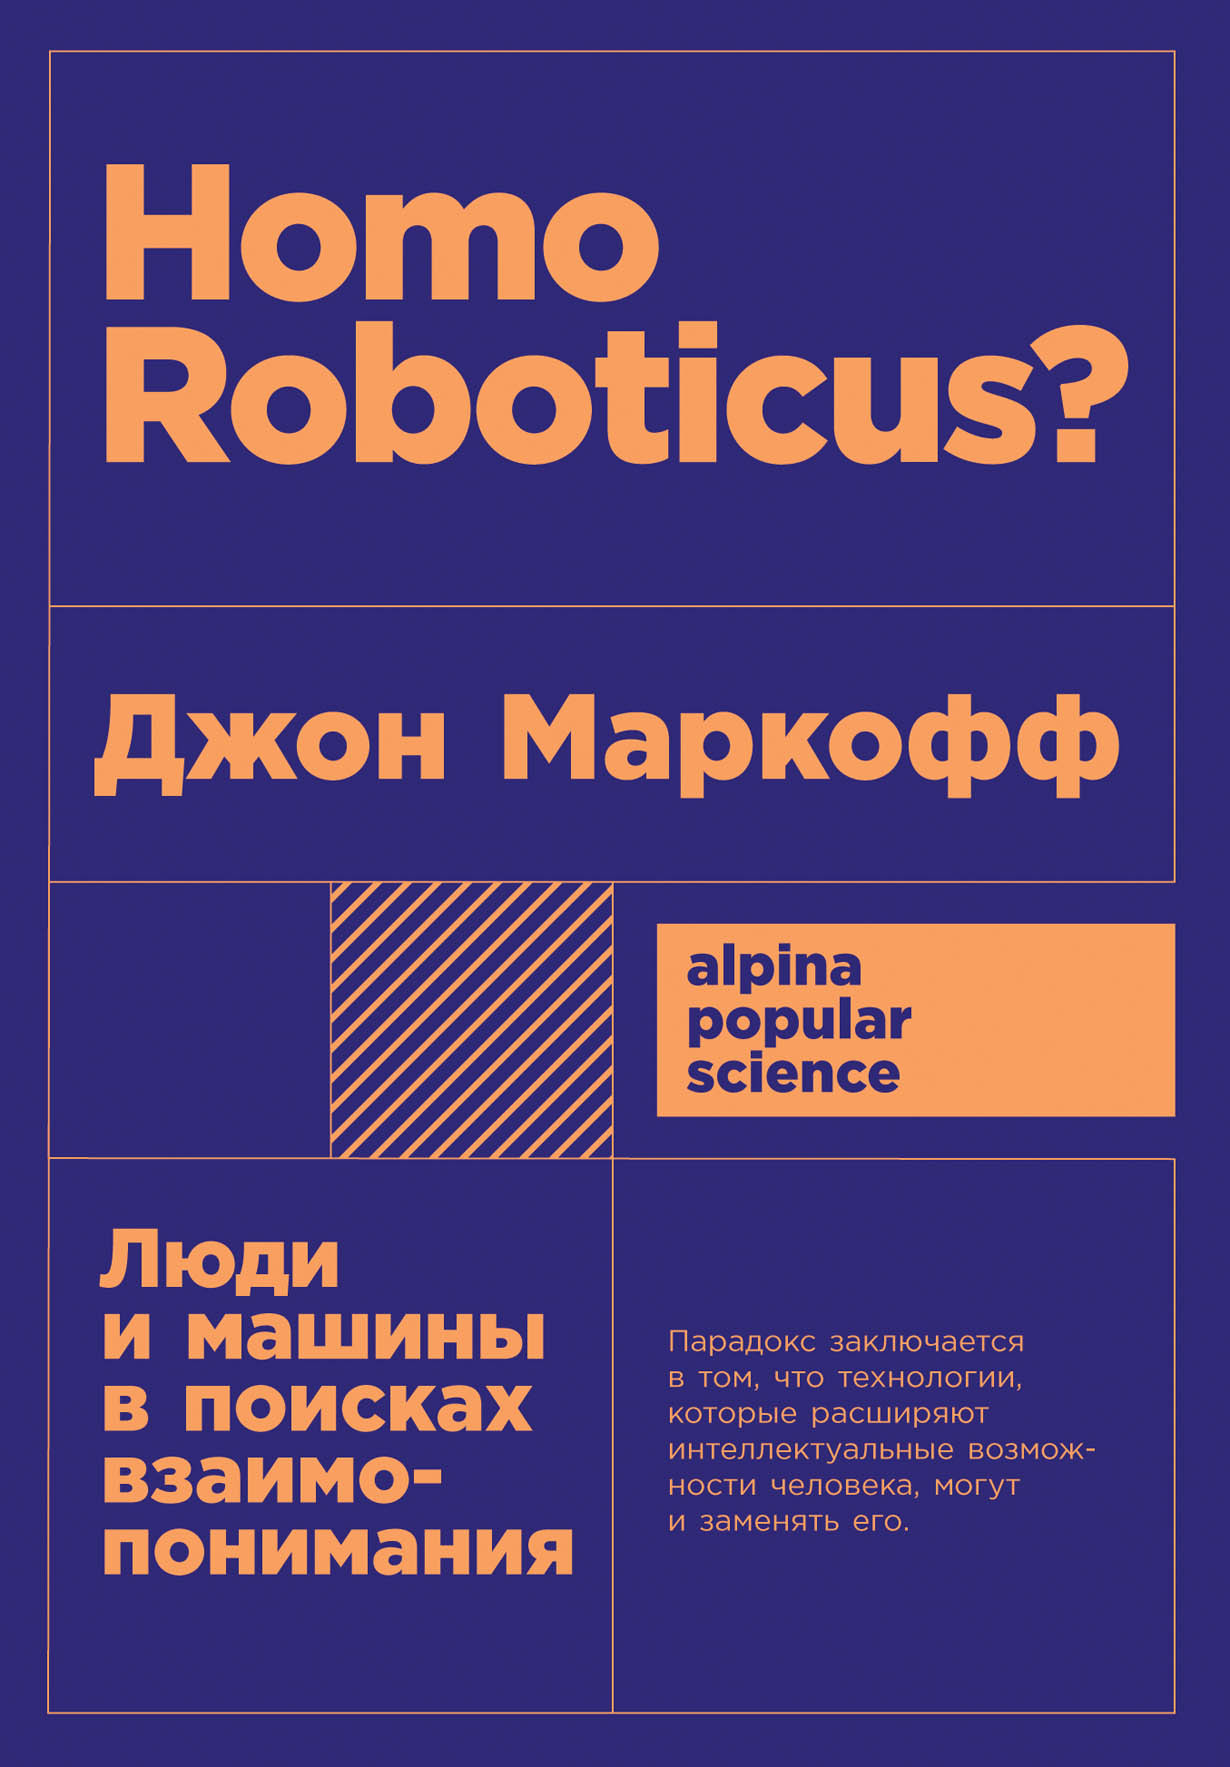 Homo Roboticus? обложка.